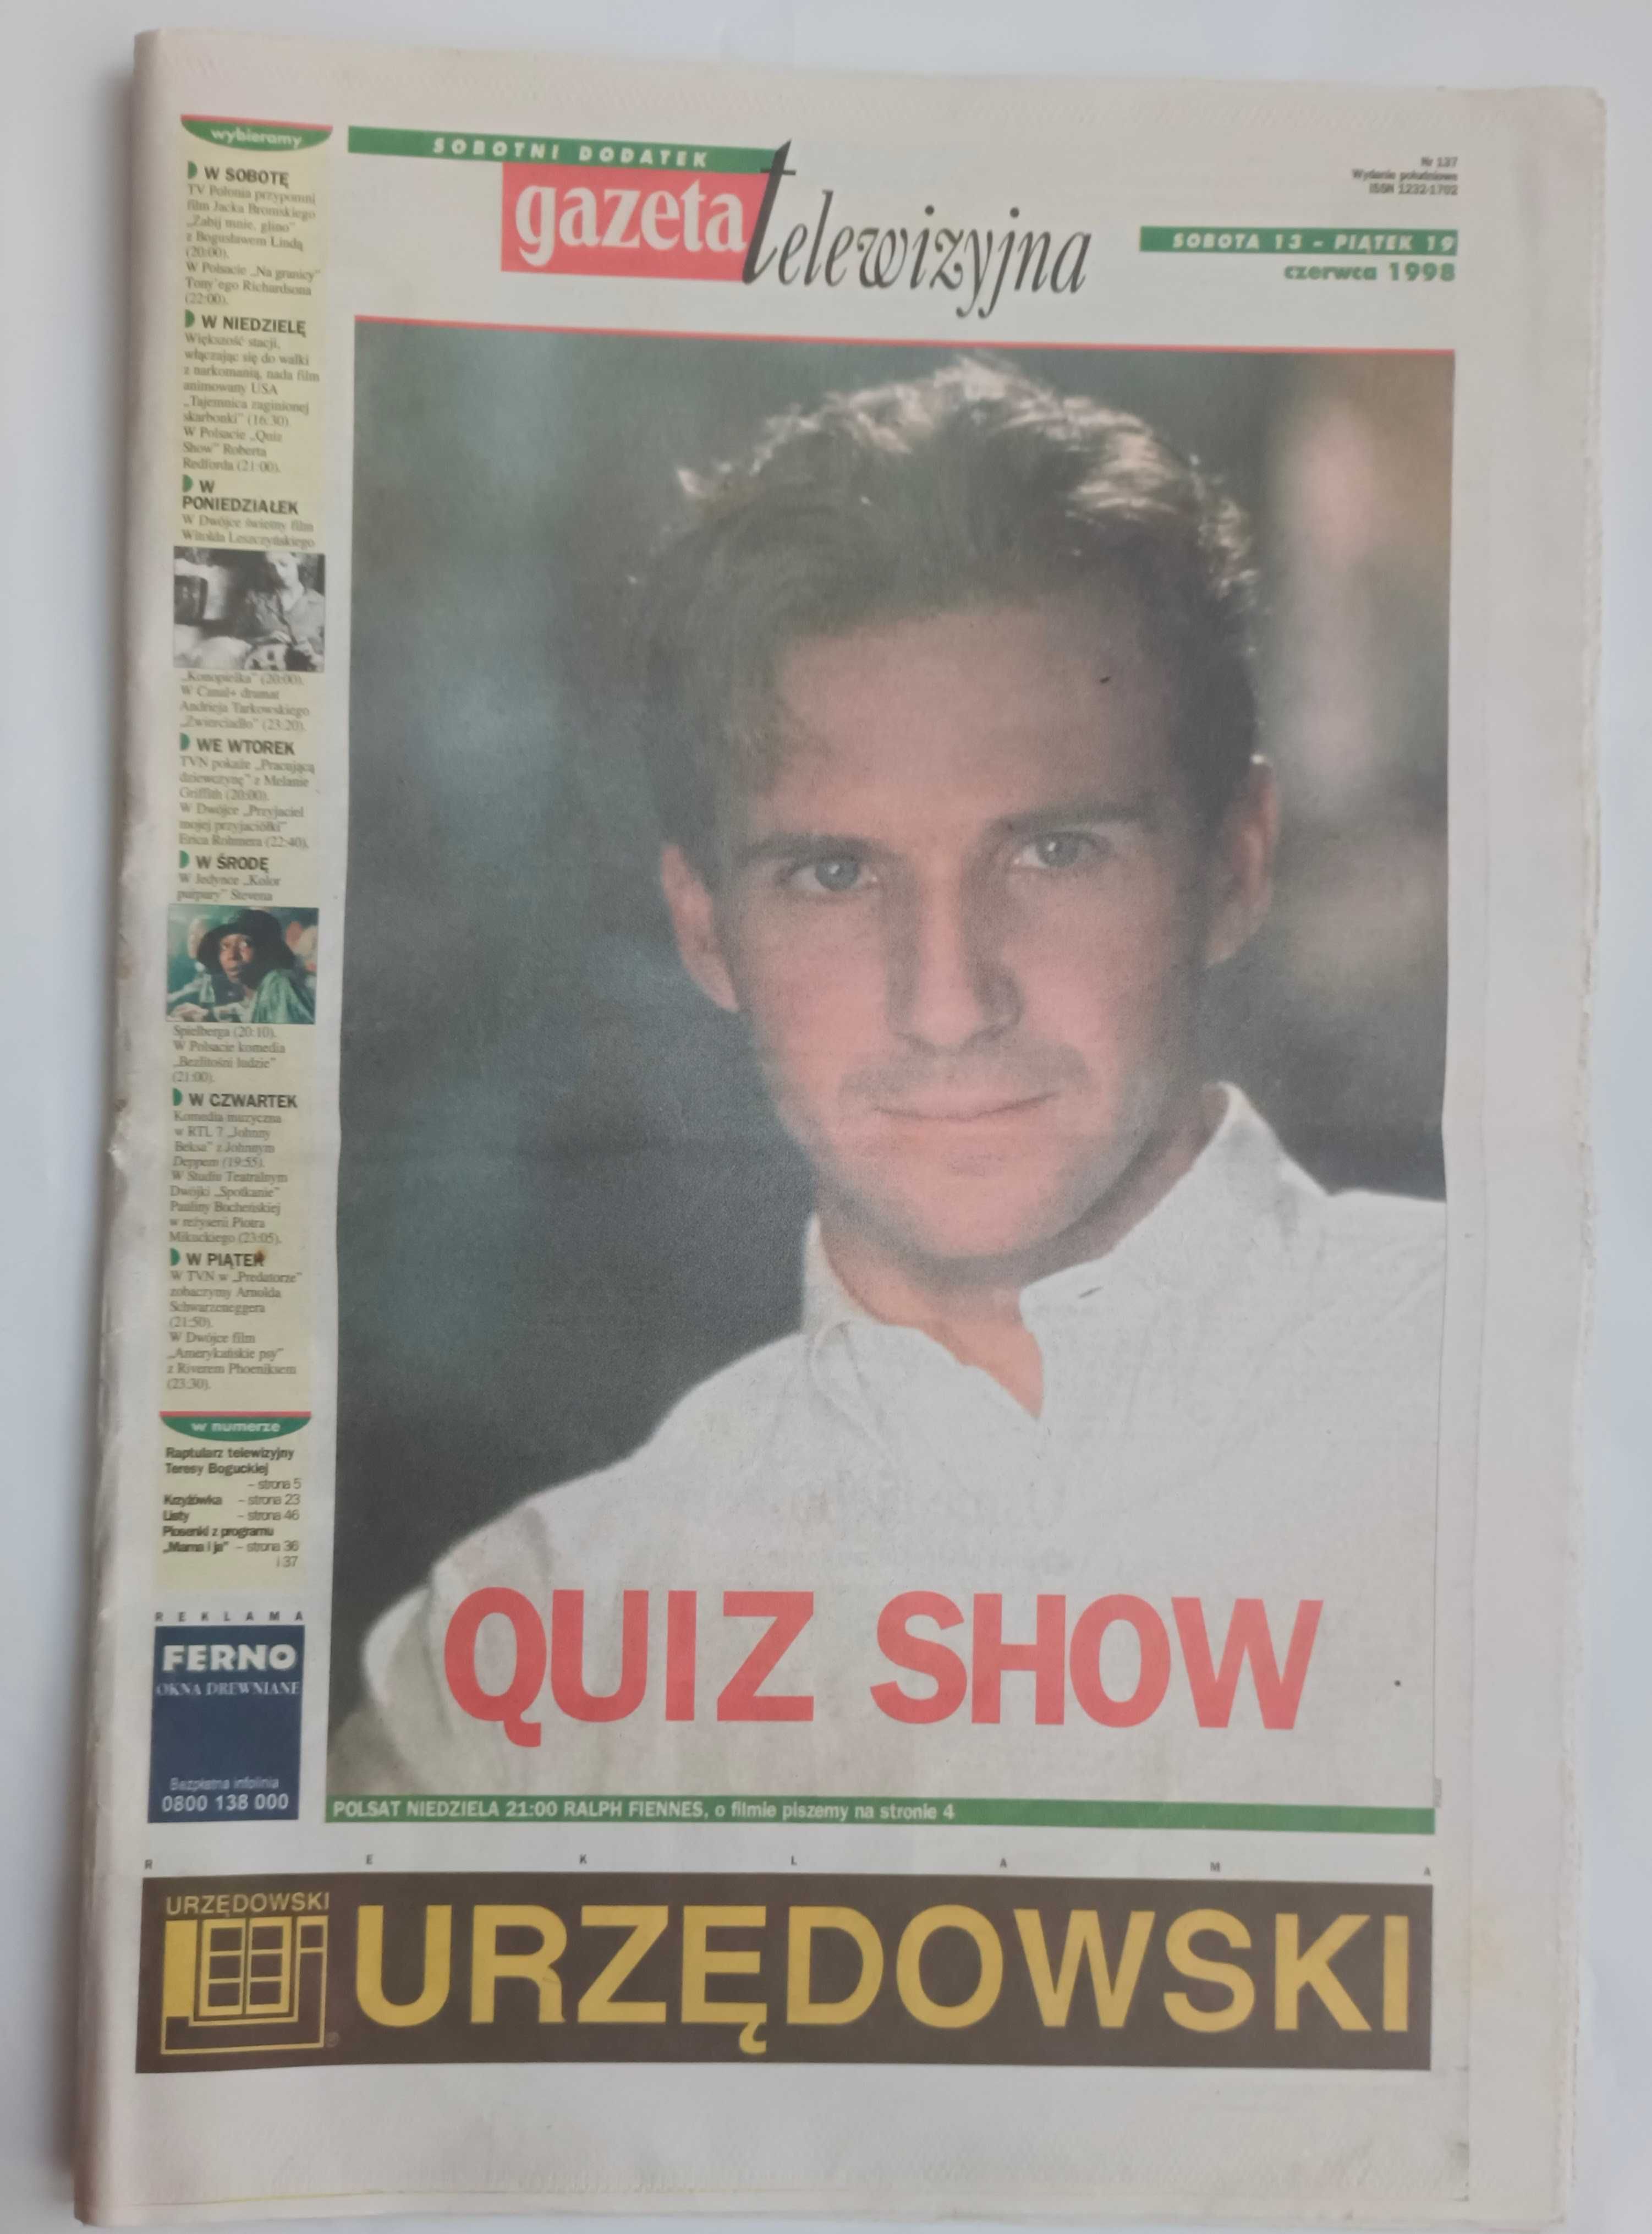 Gazeta telewizyjna sobotni dodatek do Gazety Wyborczej czerwiec 1998